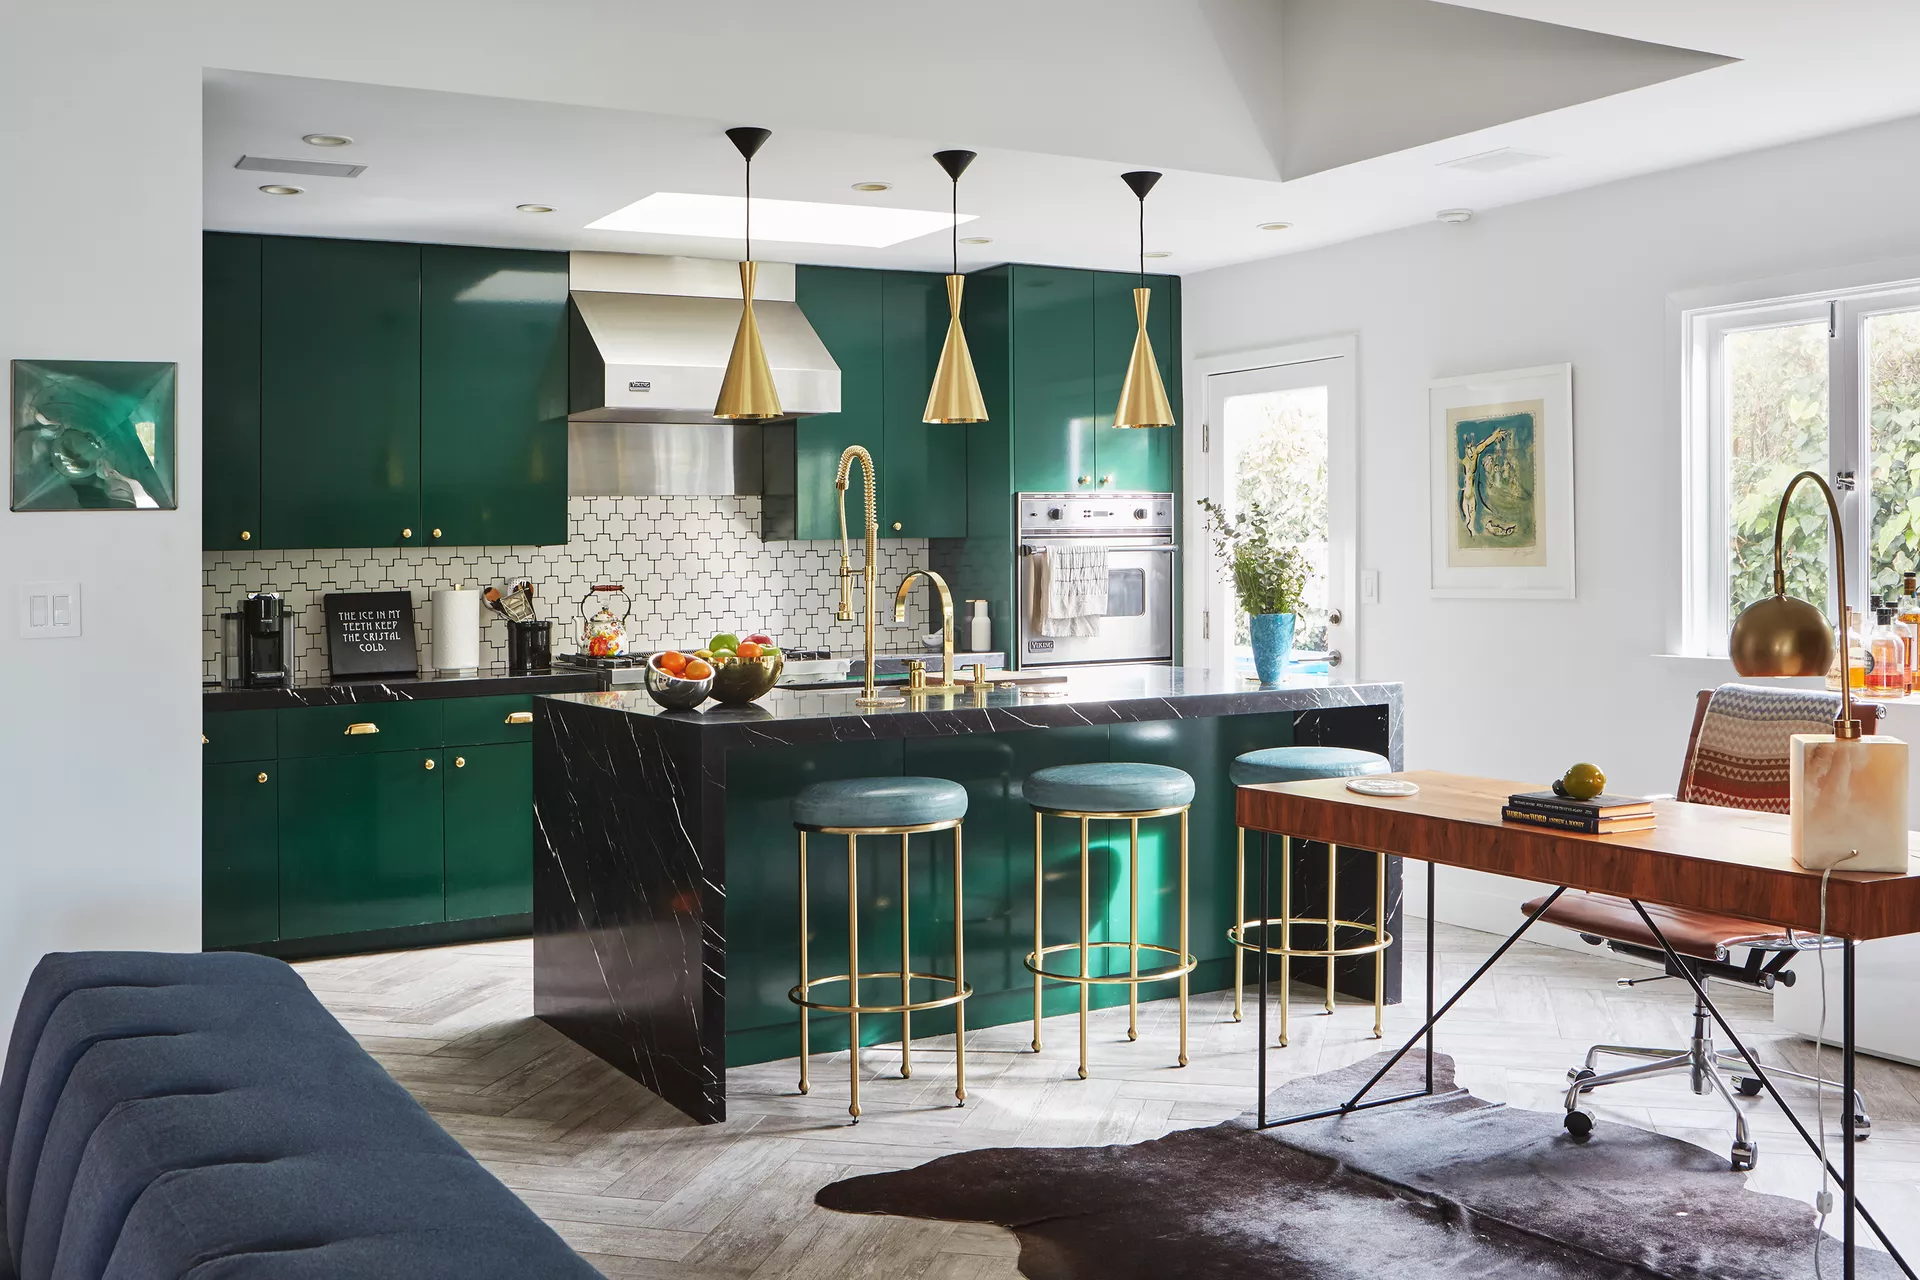 Verde esmeralda en la cocina: una idea original para el interior